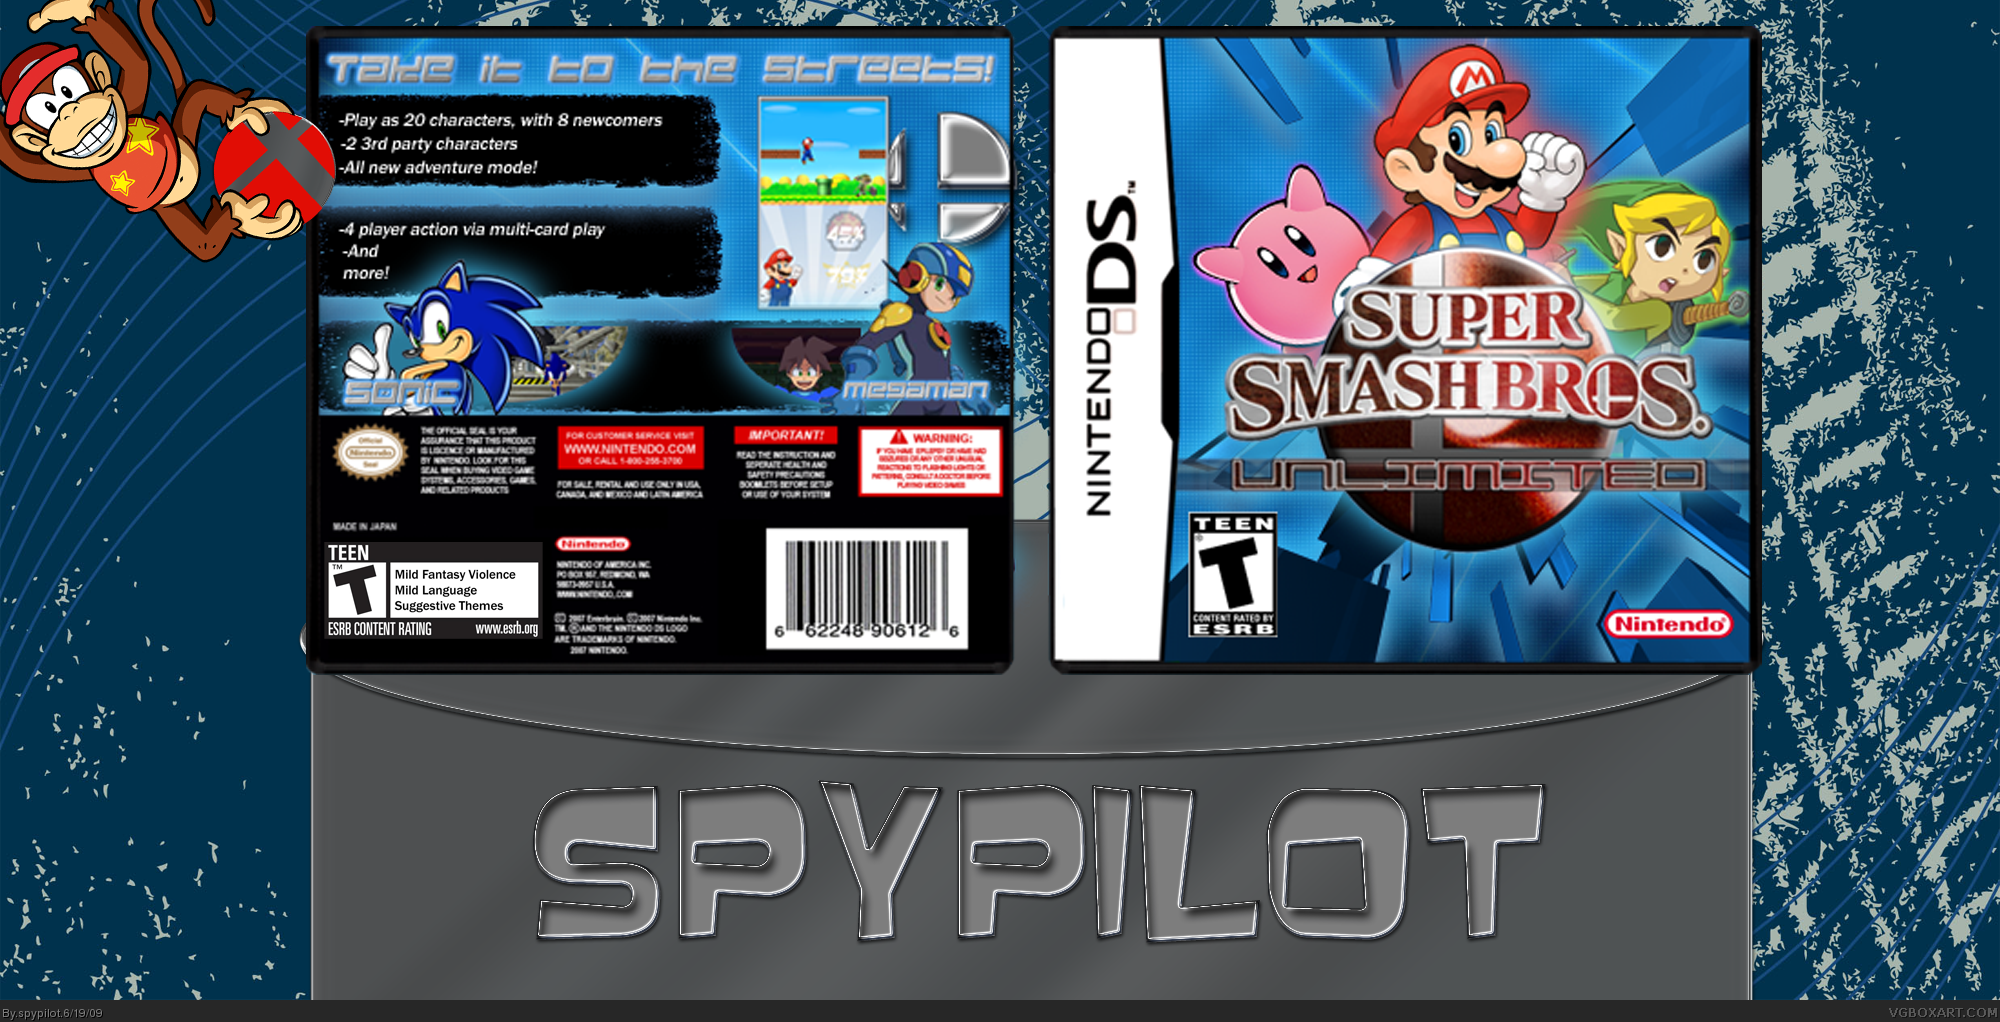 Super Smash Bros.: Unlimited box cover